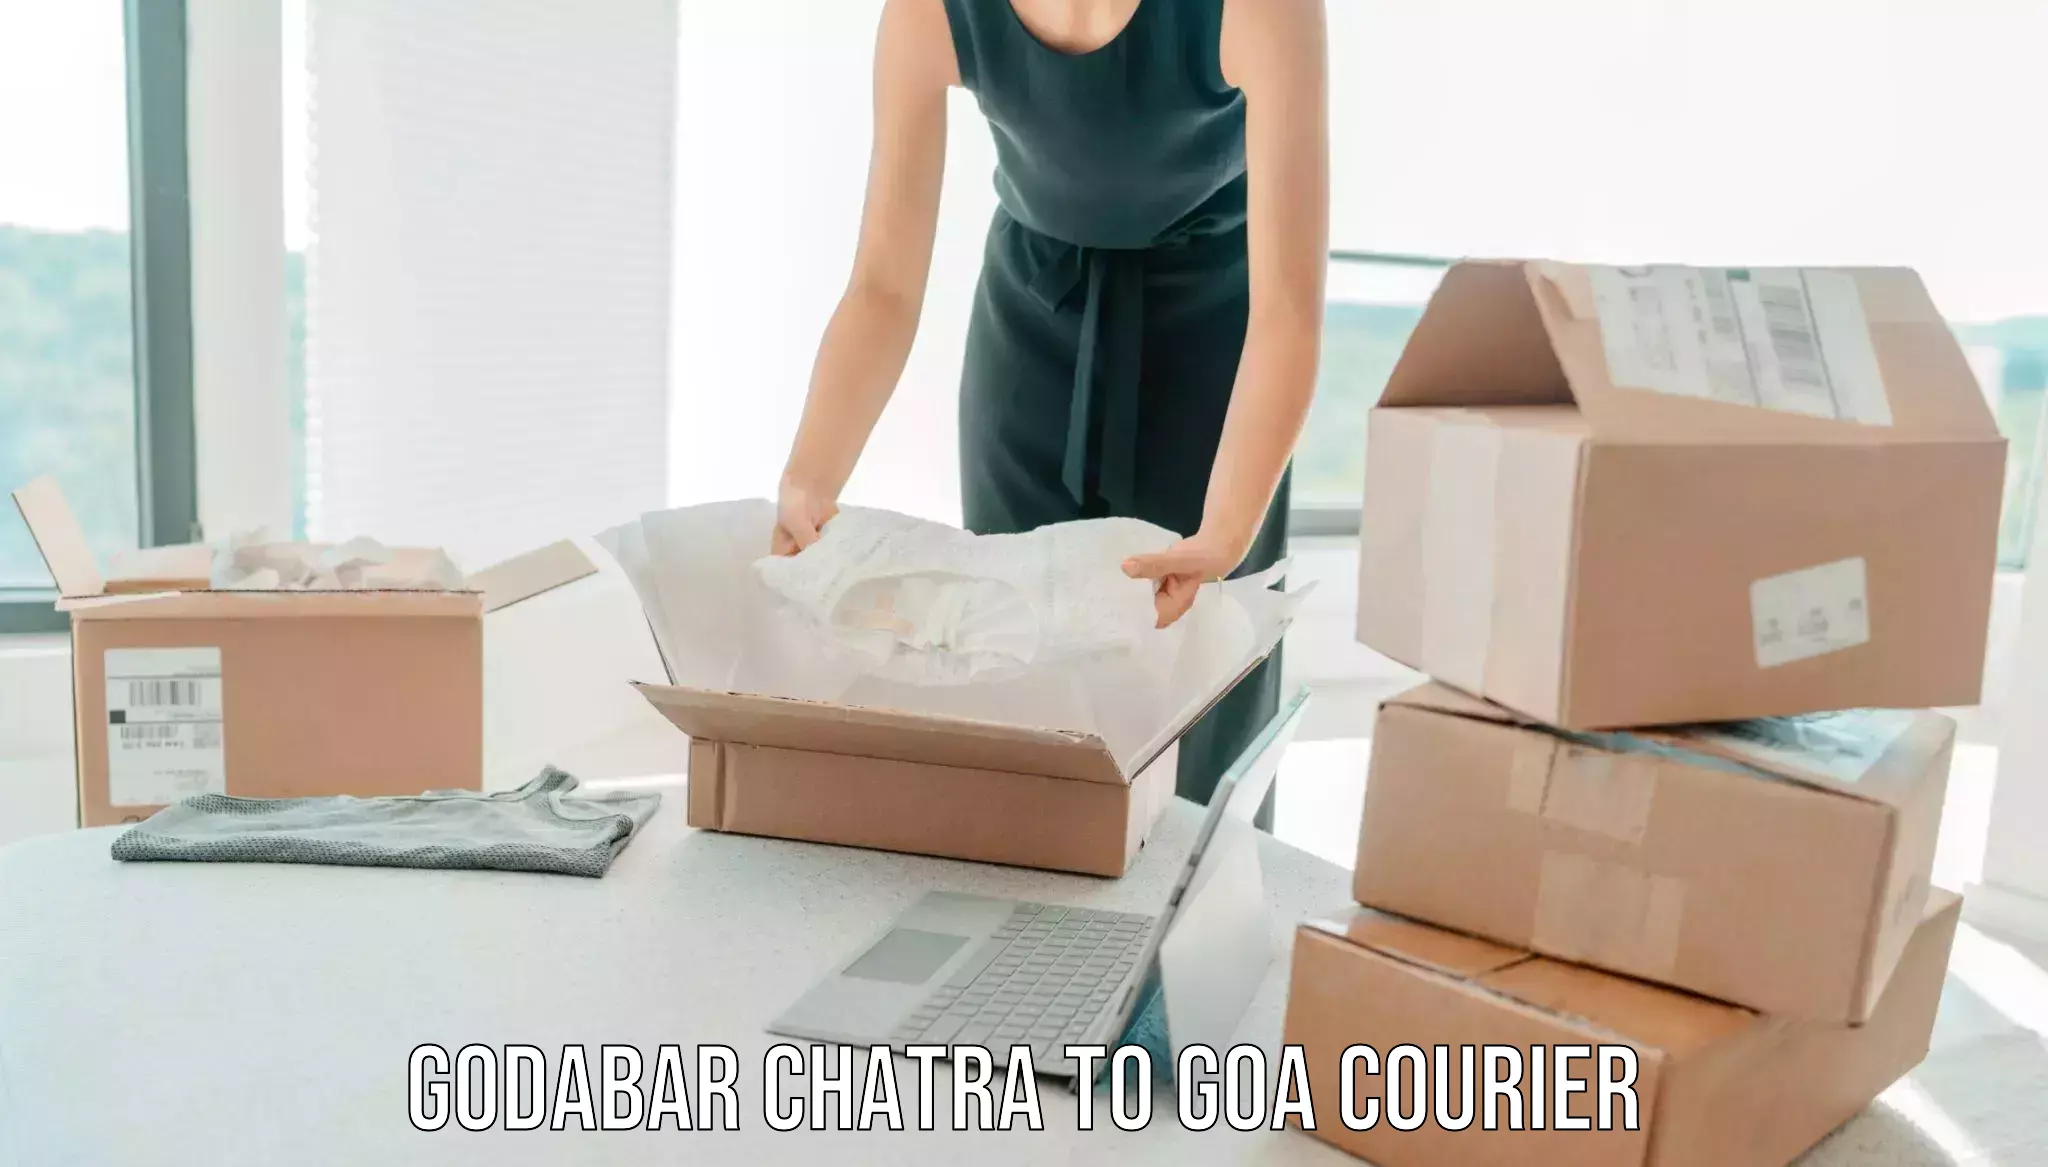 Professional home movers Godabar Chatra to Canacona